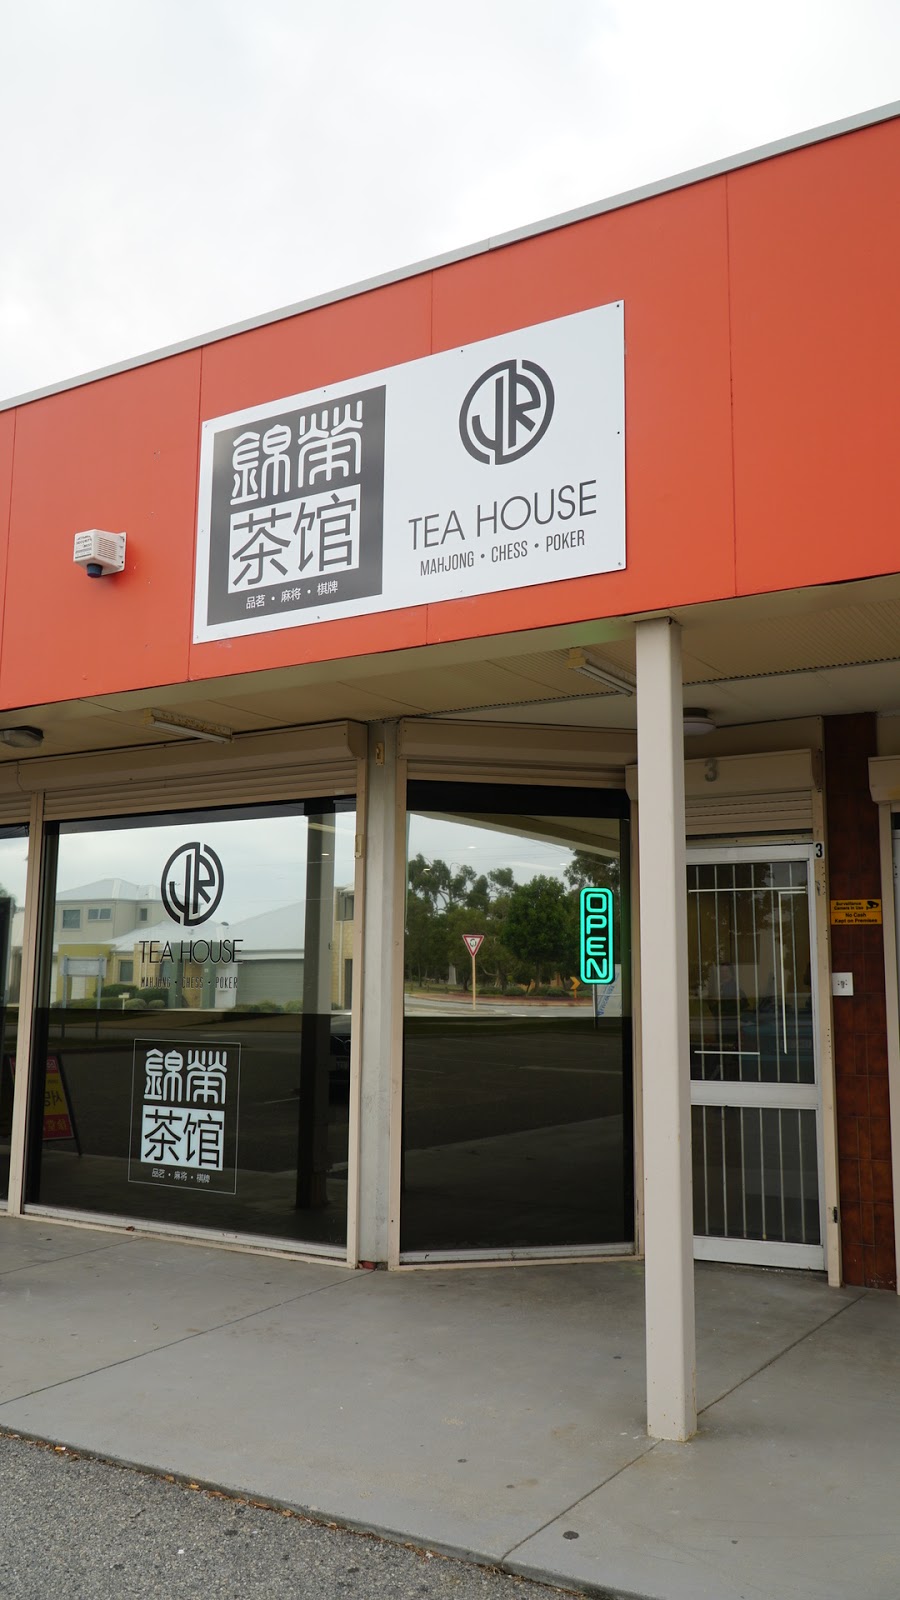 锦荣茶馆 JR Tea House | cafe | u3/560 Metcalfe Rd, Ferndale WA 6148, Australia | 0861437254 OR +61 8 6143 7254